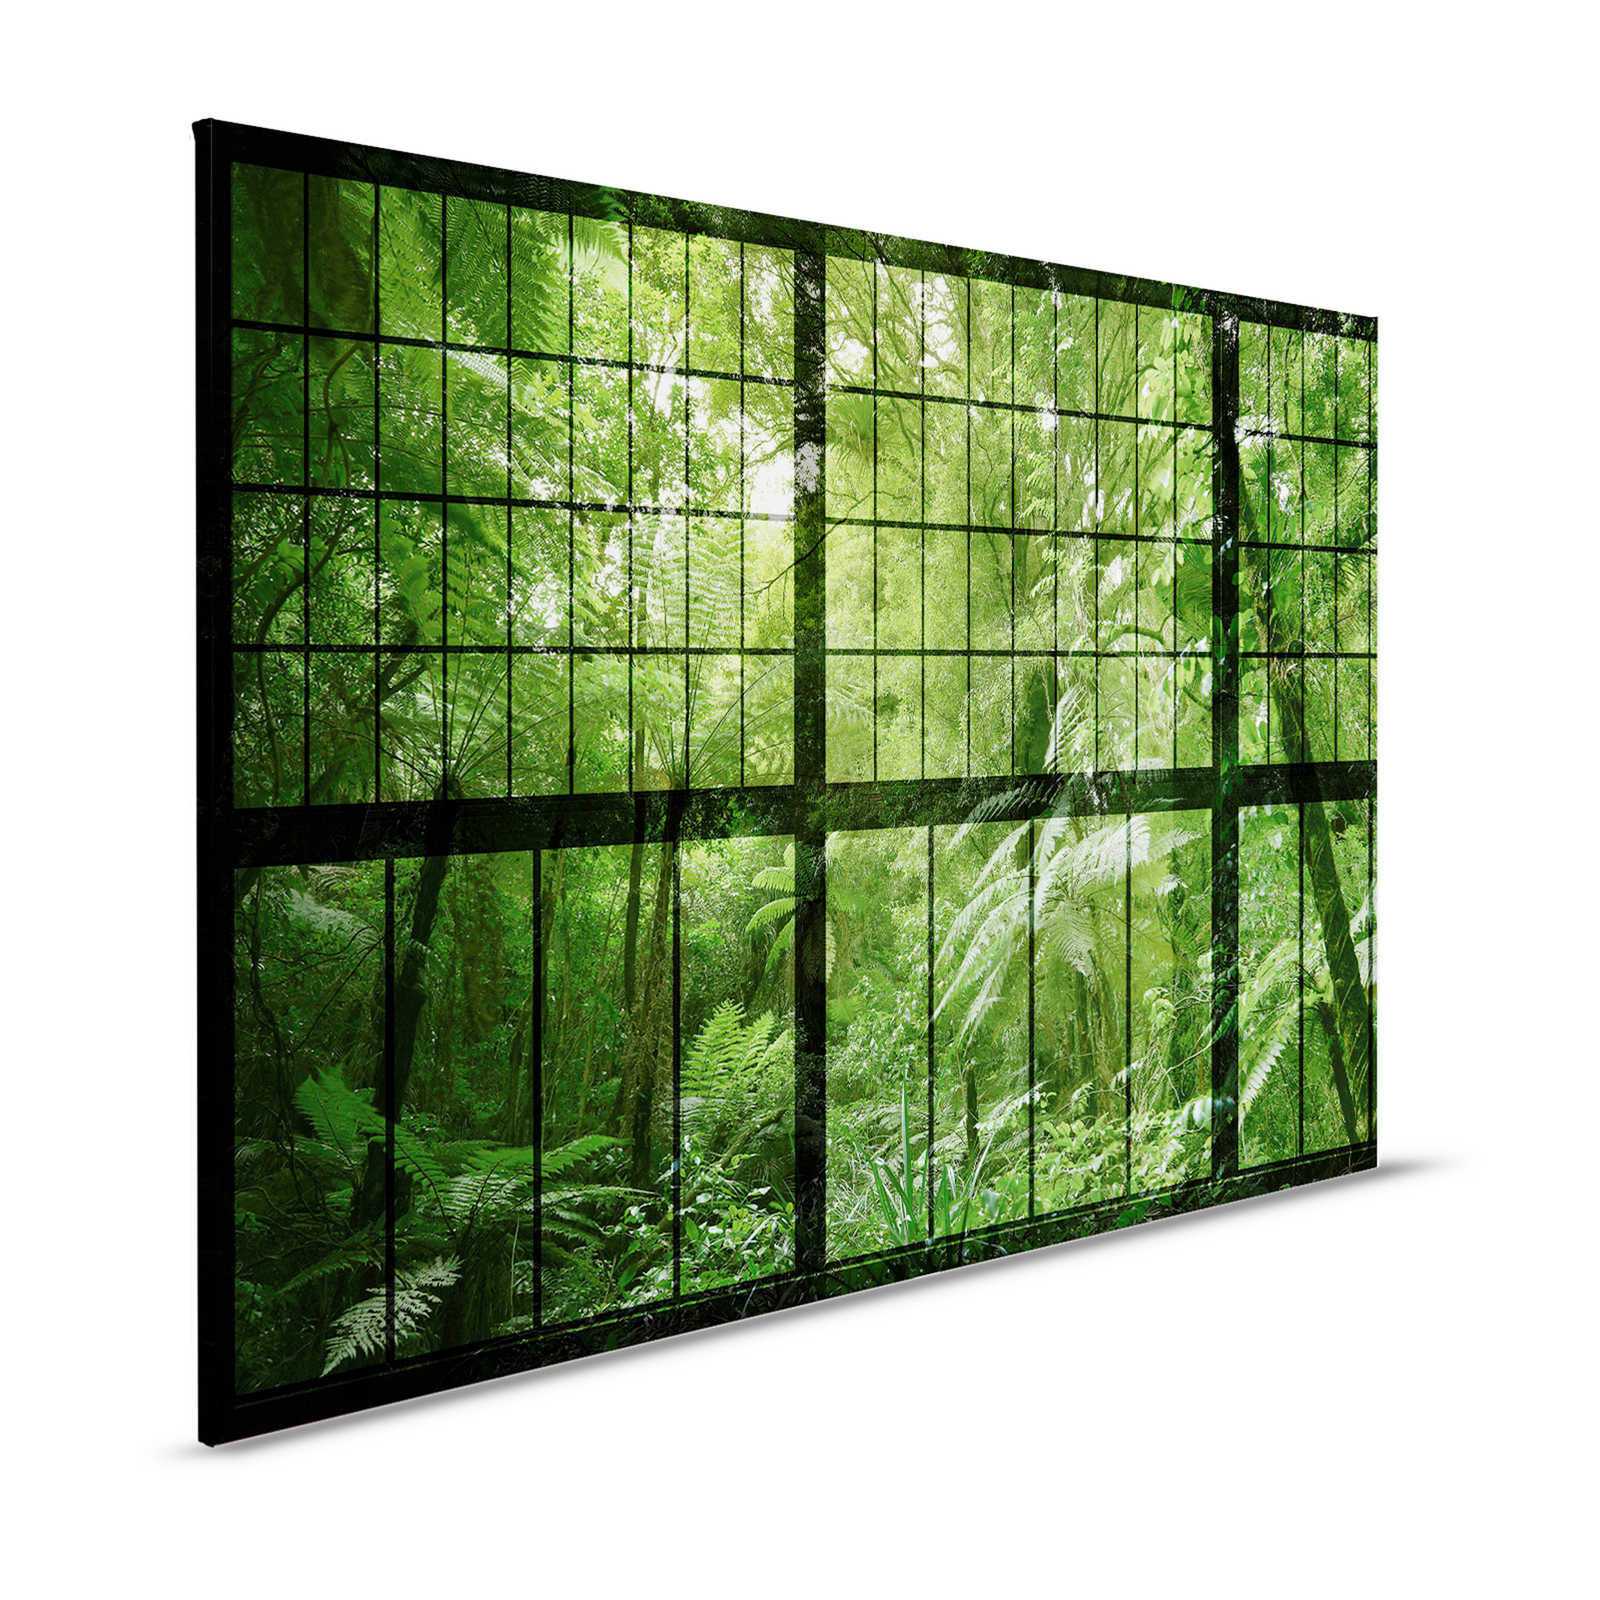 Rainforest 2 - Loft fenêtre toile avec vue sur la jungle - 1,20 m x 0,80 m
